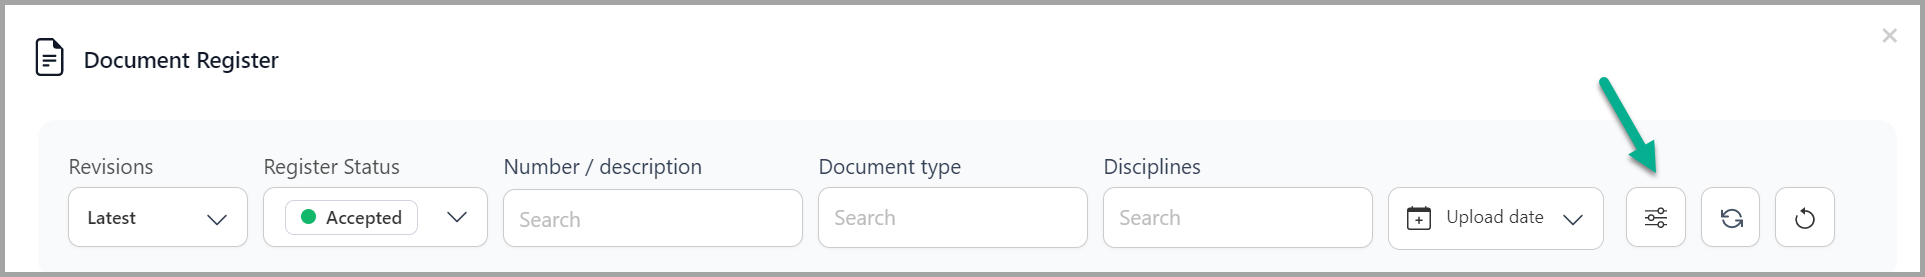 document register filter